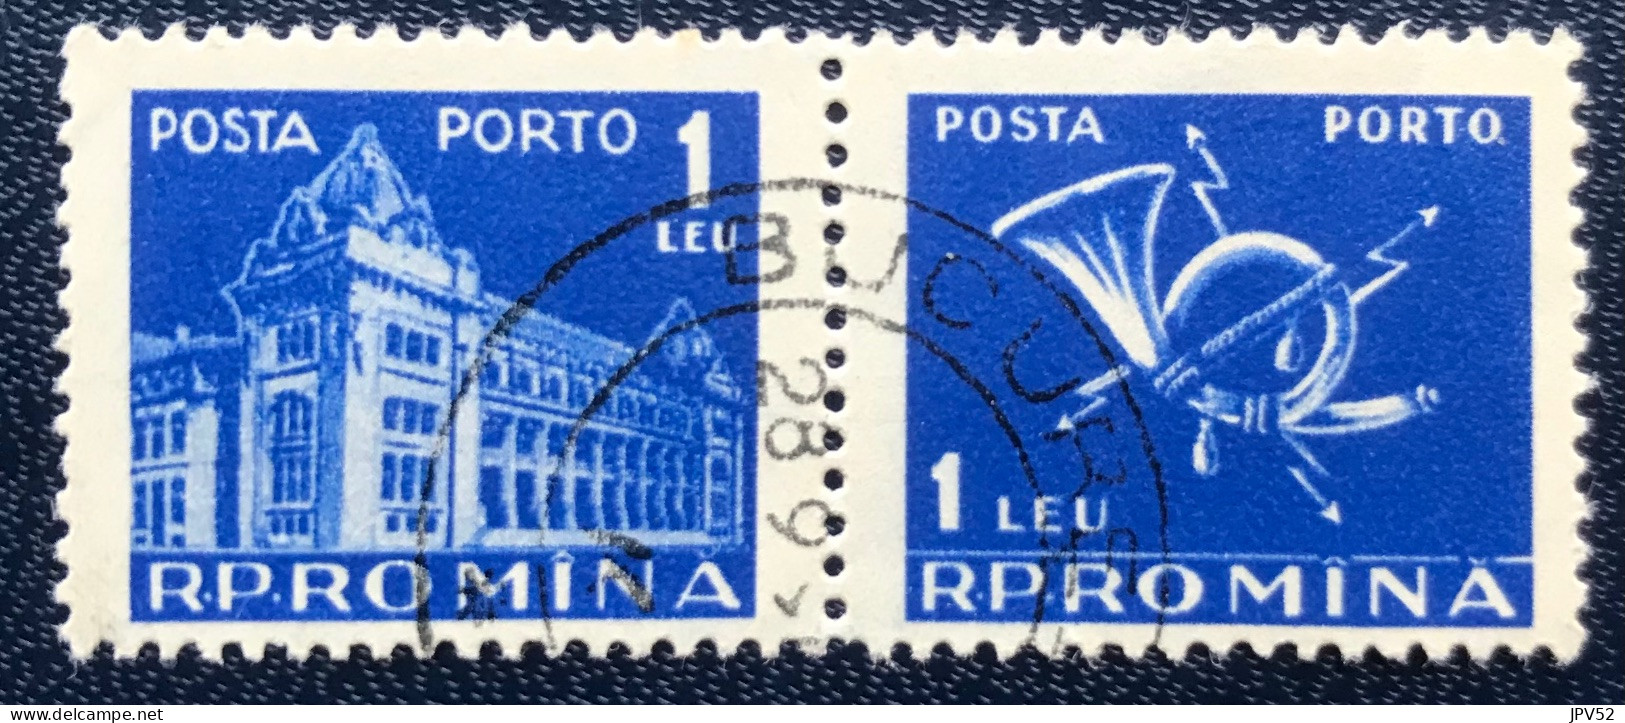 Romana - Roemenië - C14/54 - 1957 - (°)used - Michel 106 - Postkantoor & Posthoorn & Bliksems - Postage Due